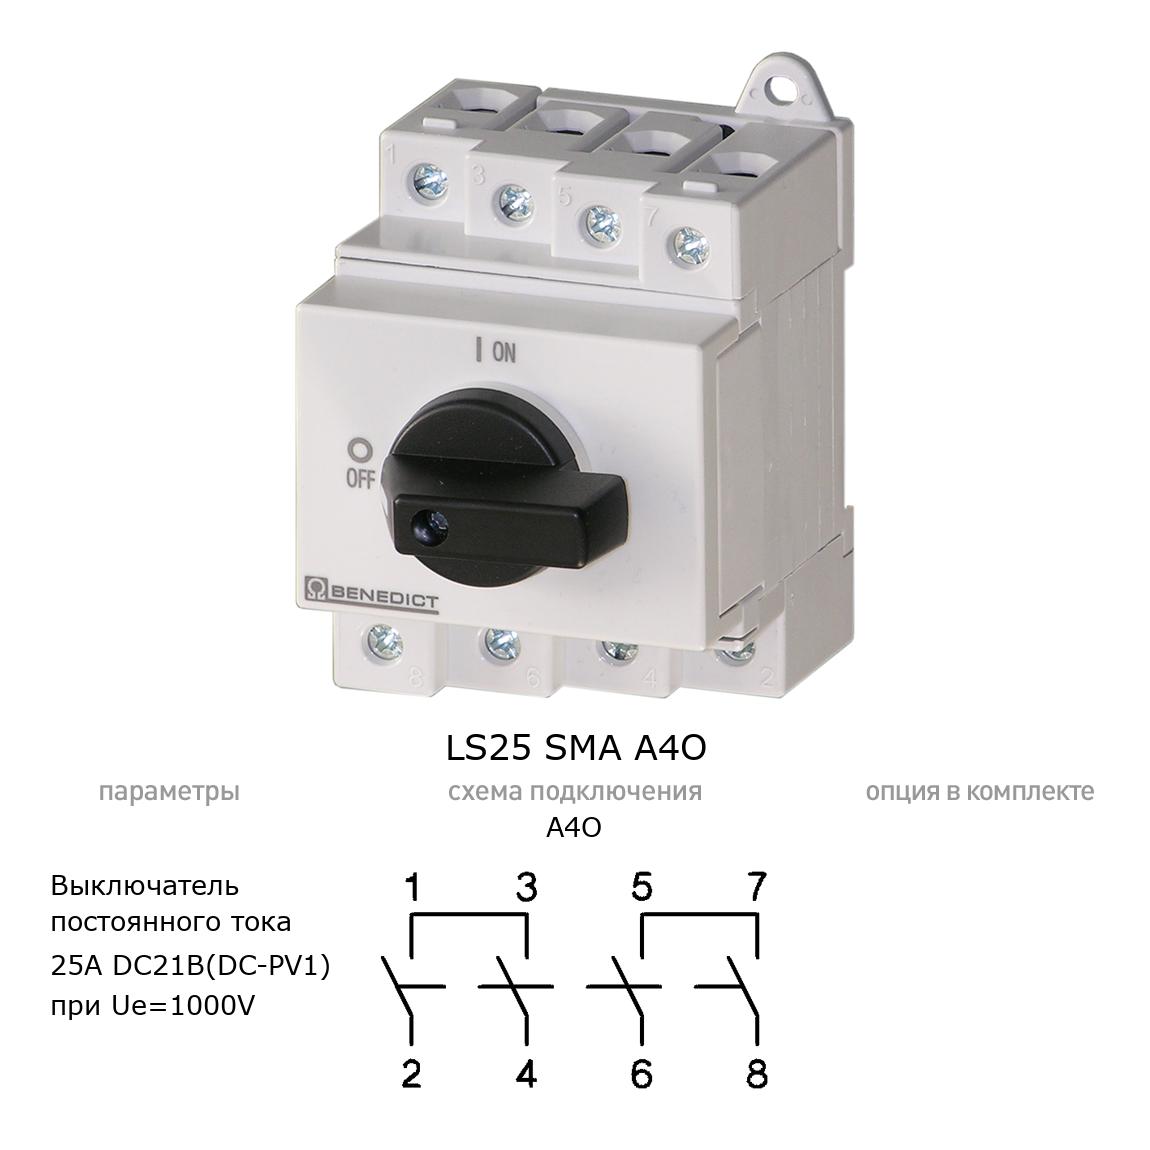 Кулачковый переключатель для постоянного тока (DC) LS25 SMA A4O BENEDICT